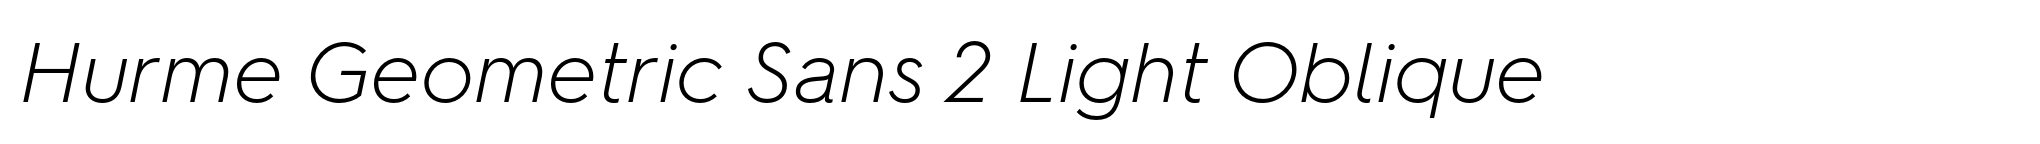 Hurme Geometric Sans 2 Light Oblique image